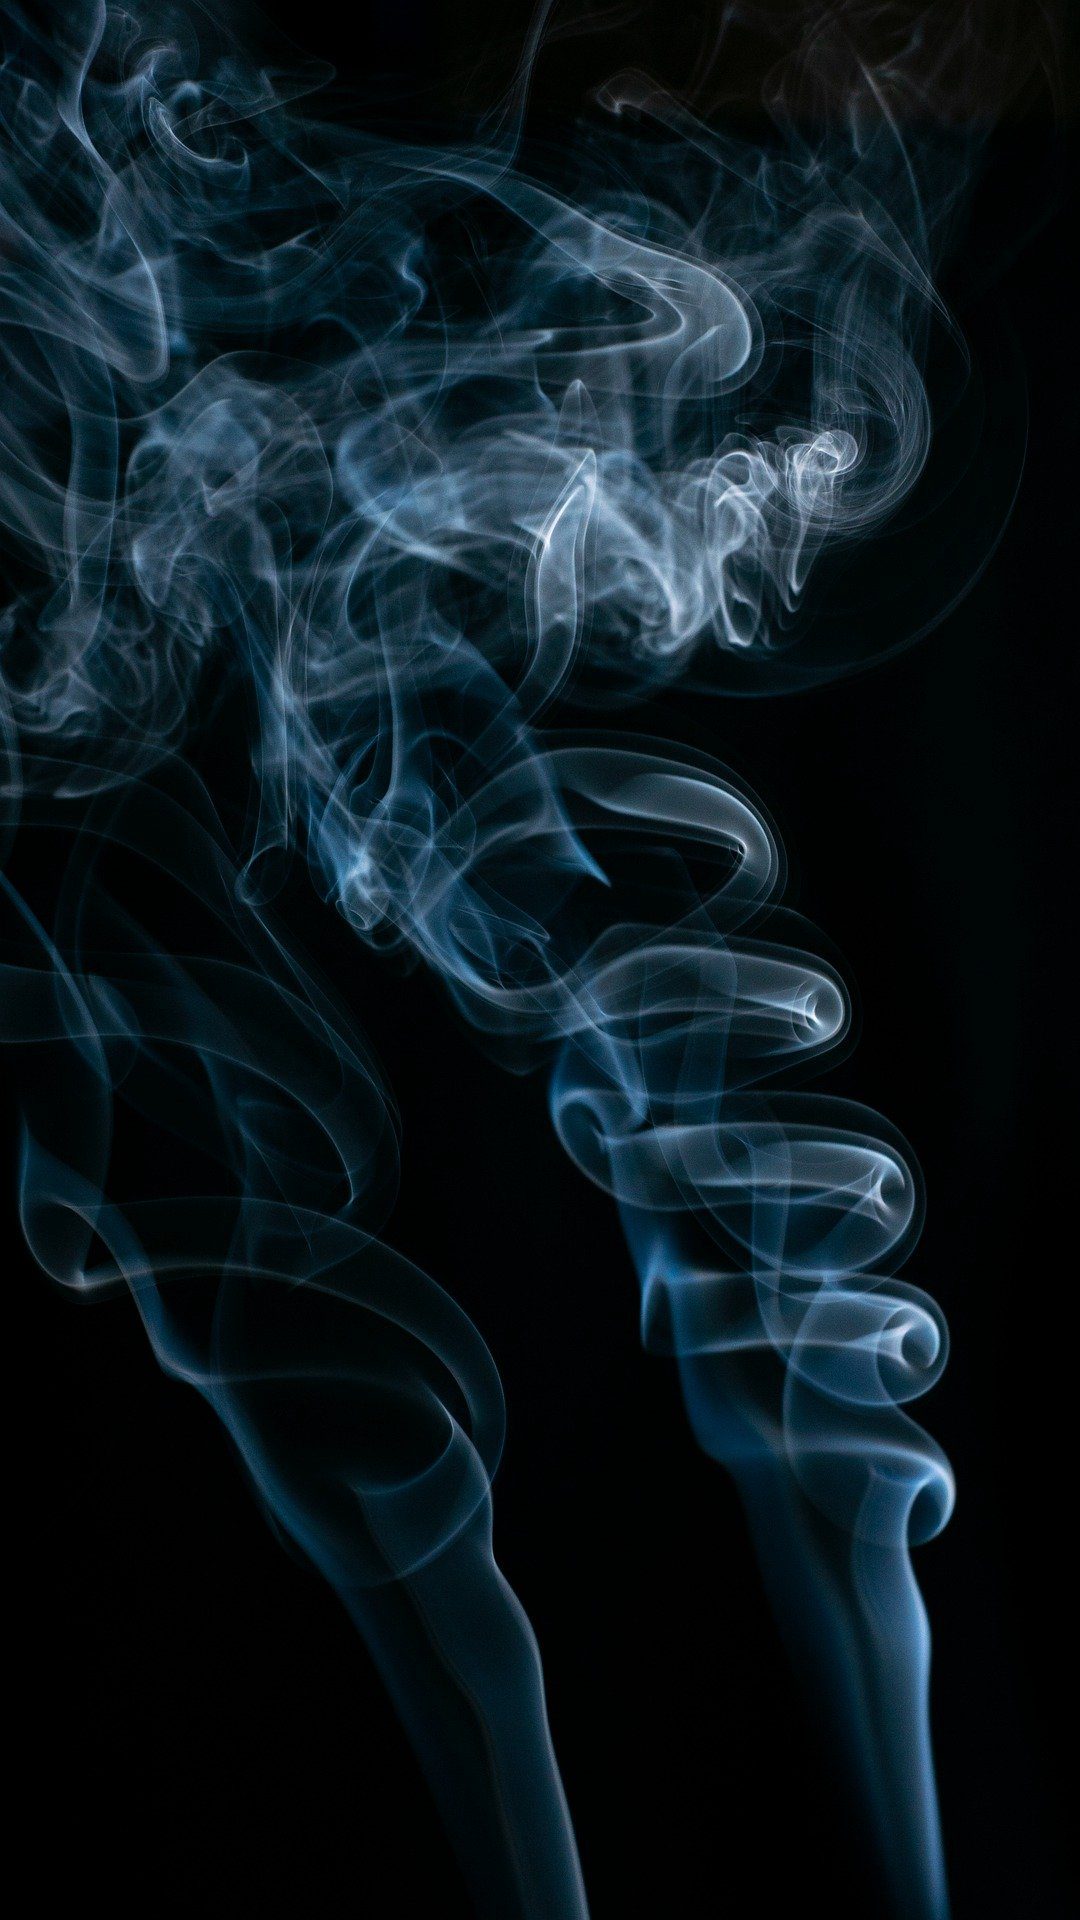 袅袅 烟雾艺术 黑色背景创意烟雾艺术摄影手机壁纸 烟